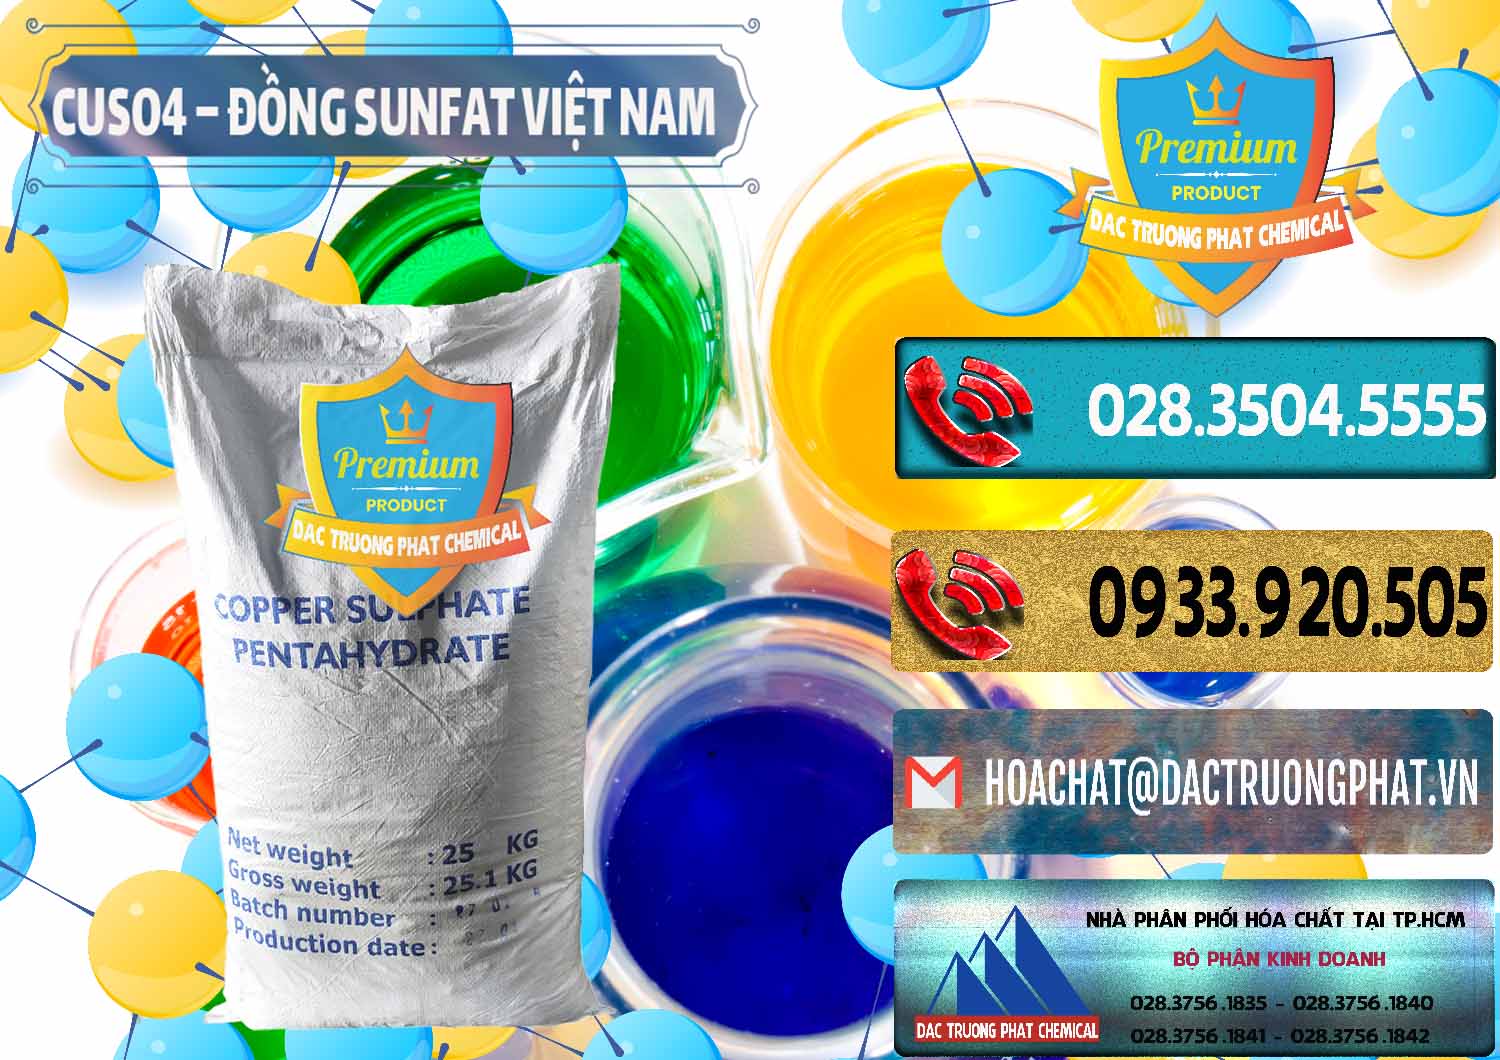 Nơi chuyên bán _ cung cấp CuSO4 – Đồng Sunfat Dạng Bột Việt Nam - 0196 - Đơn vị chuyên bán & cung cấp hóa chất tại TP.HCM - hoachatdetnhuom.com